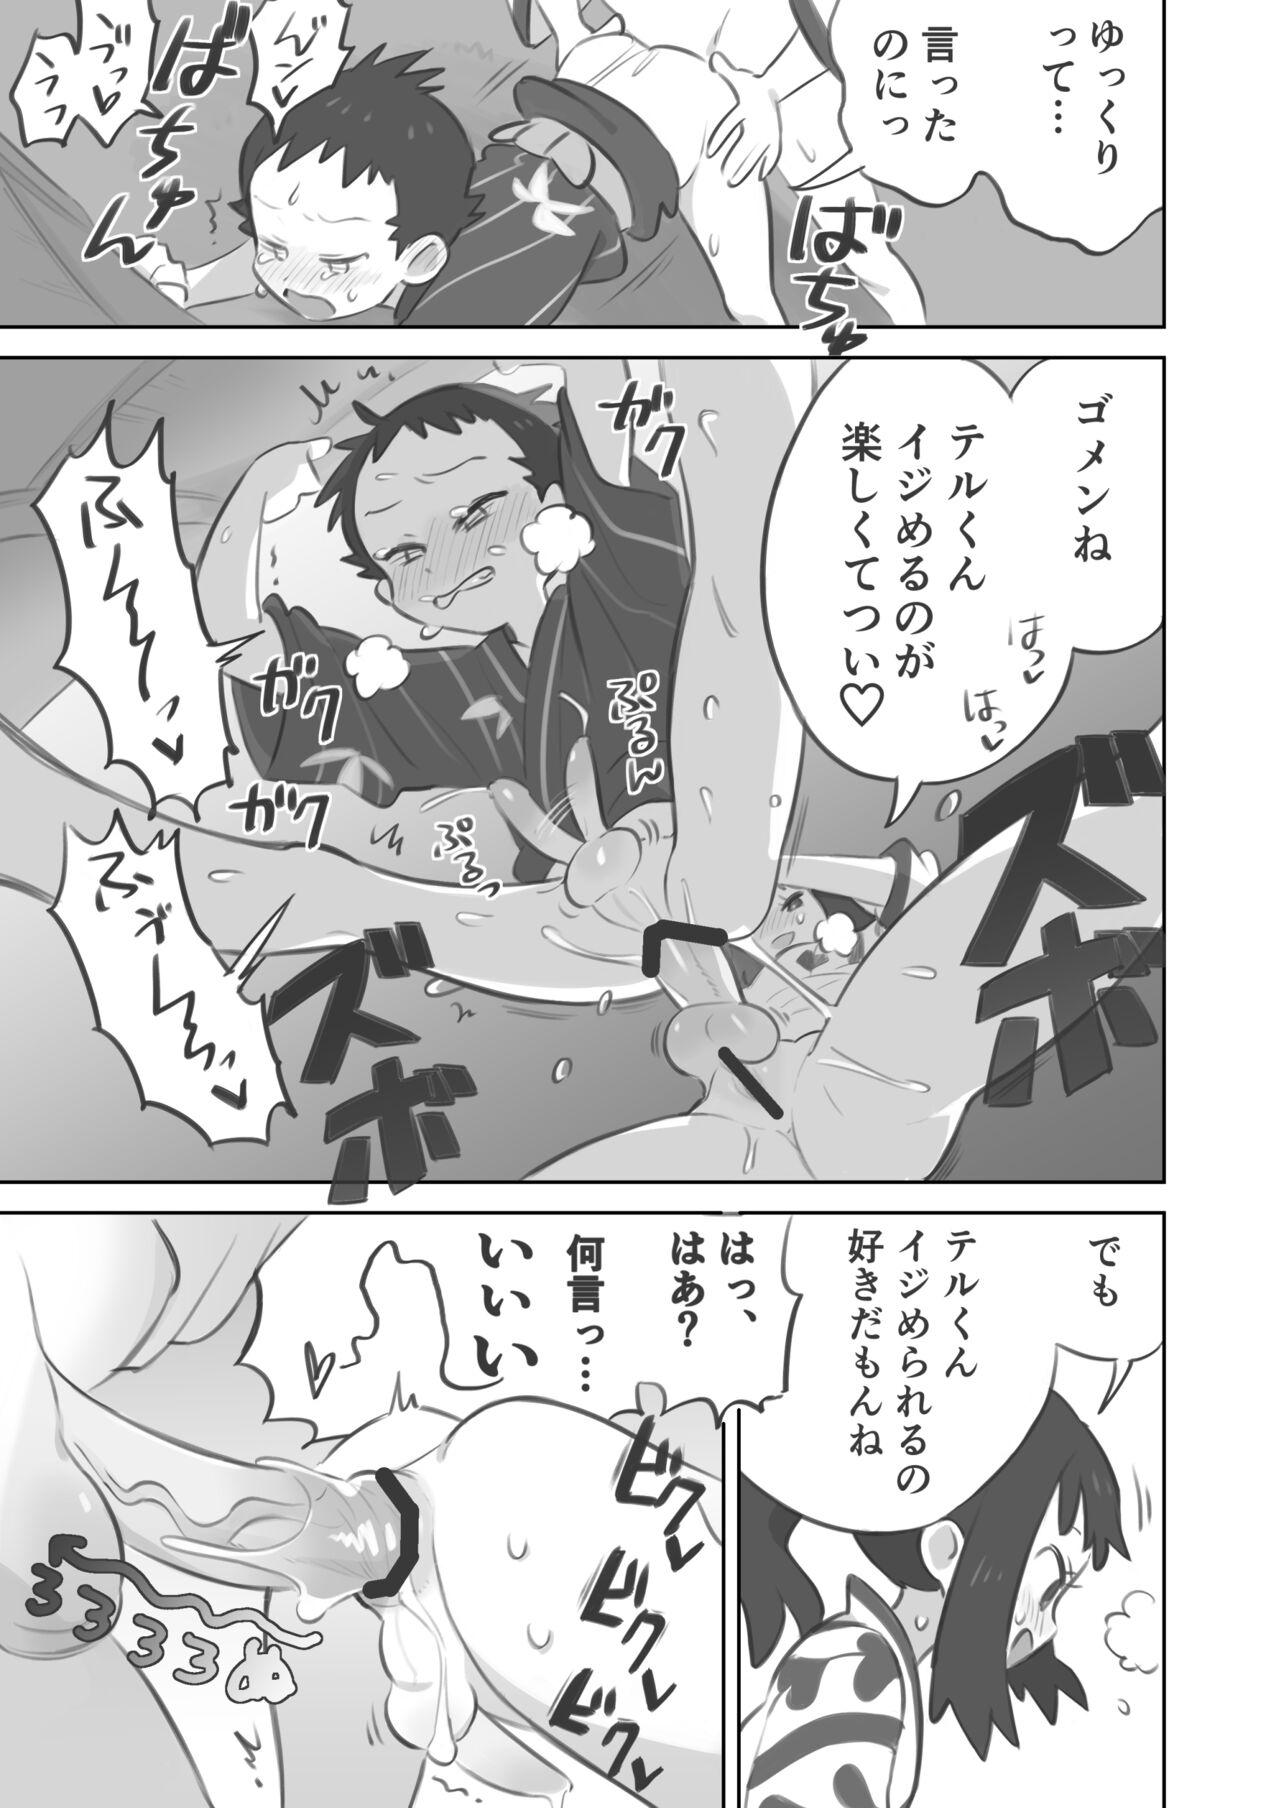 Cornudo Futanari shujinkō-chan ga Teru senpai o horu manga 2 - Pokemon | pocket monsters Bokep - Page 11